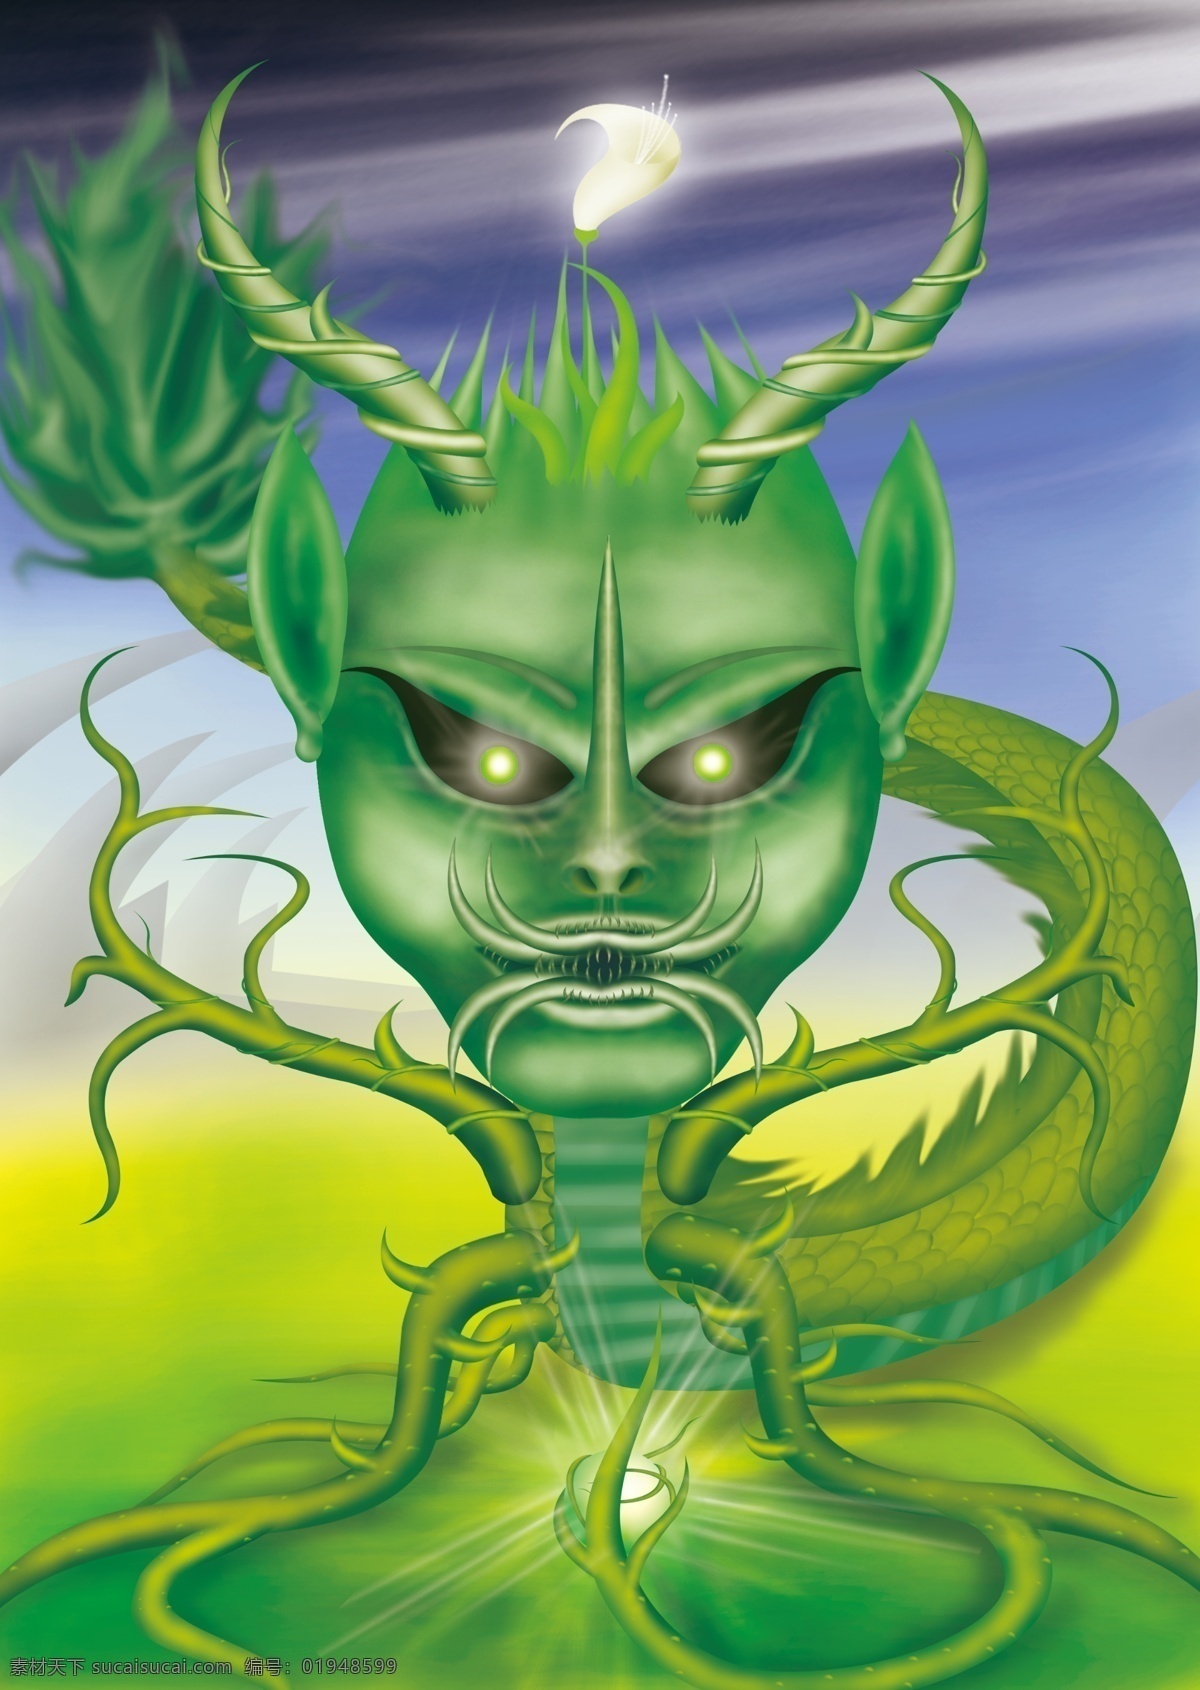 绿色精灵 神兽 守护神 绿色 龙 四不像 恶魔 卡通图 卡通人物 动漫 绿色人物 精灵 森林精灵 唯 爱 独 广告设计模板 源文件